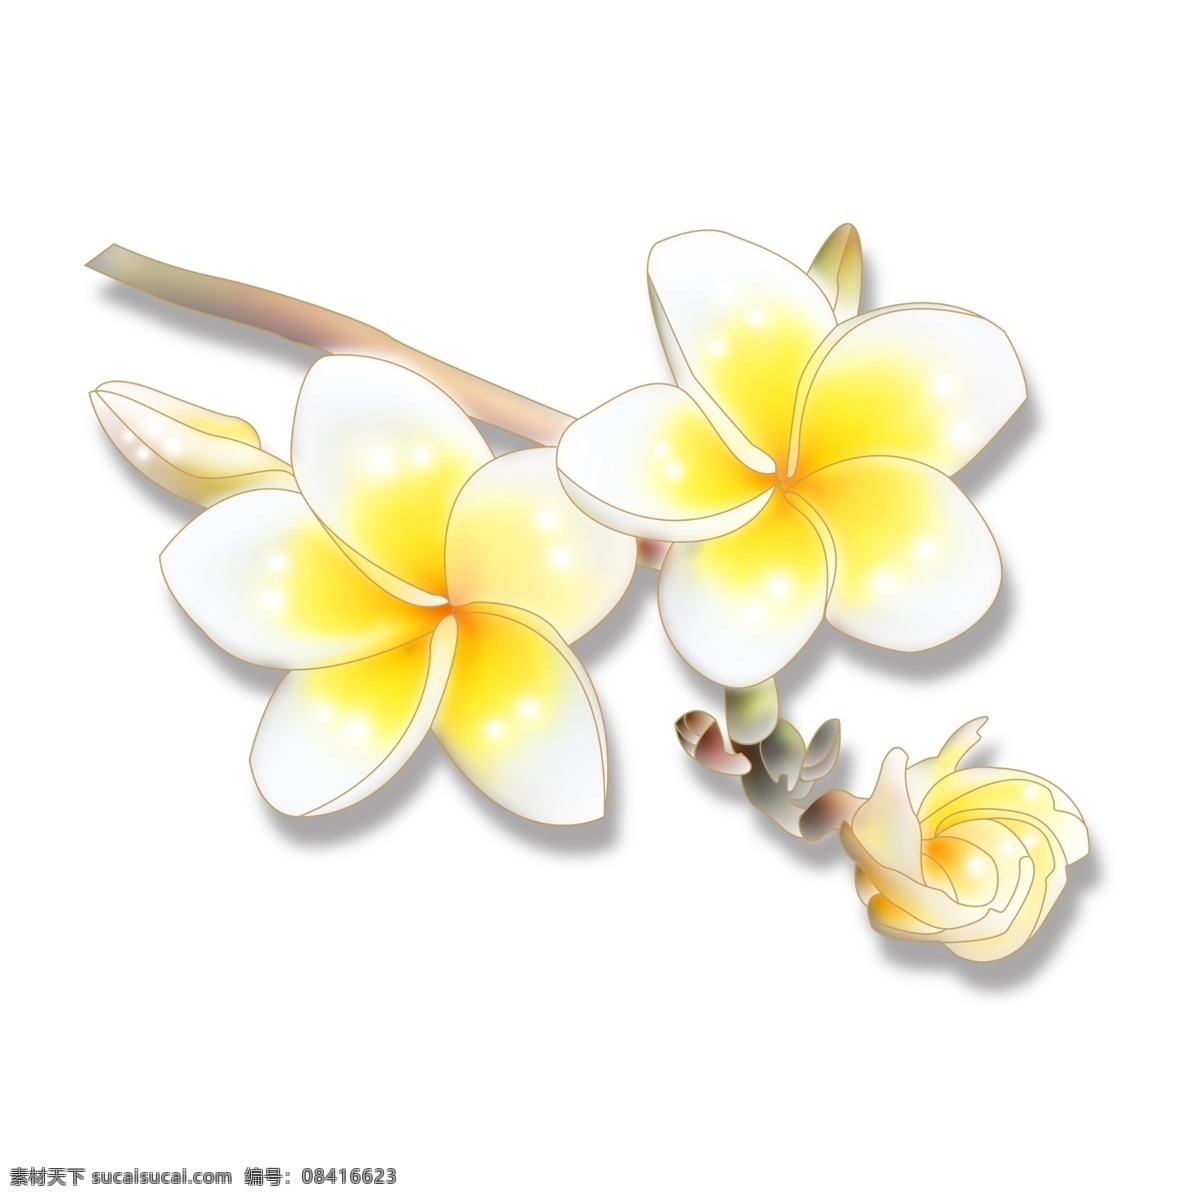 三 朵 黄白色 花朵 春暖花开 绿叶 插花 香薰 高贵 热情奔放 小清新 文艺范